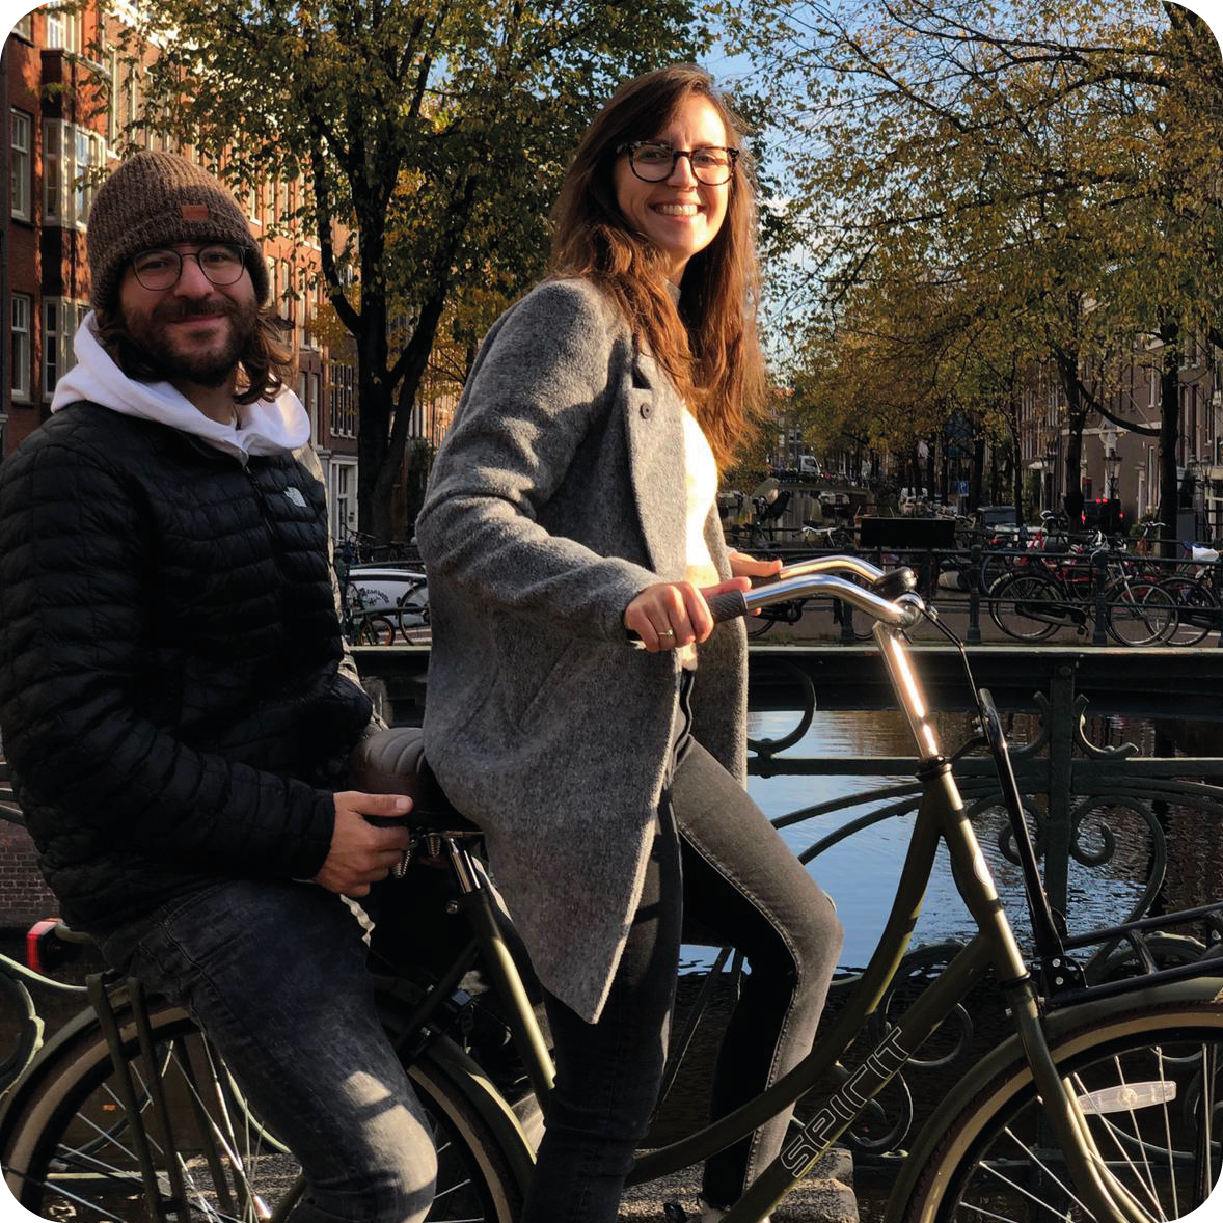 #Ride #Love #Share: Portretten van alledaagse fietsers